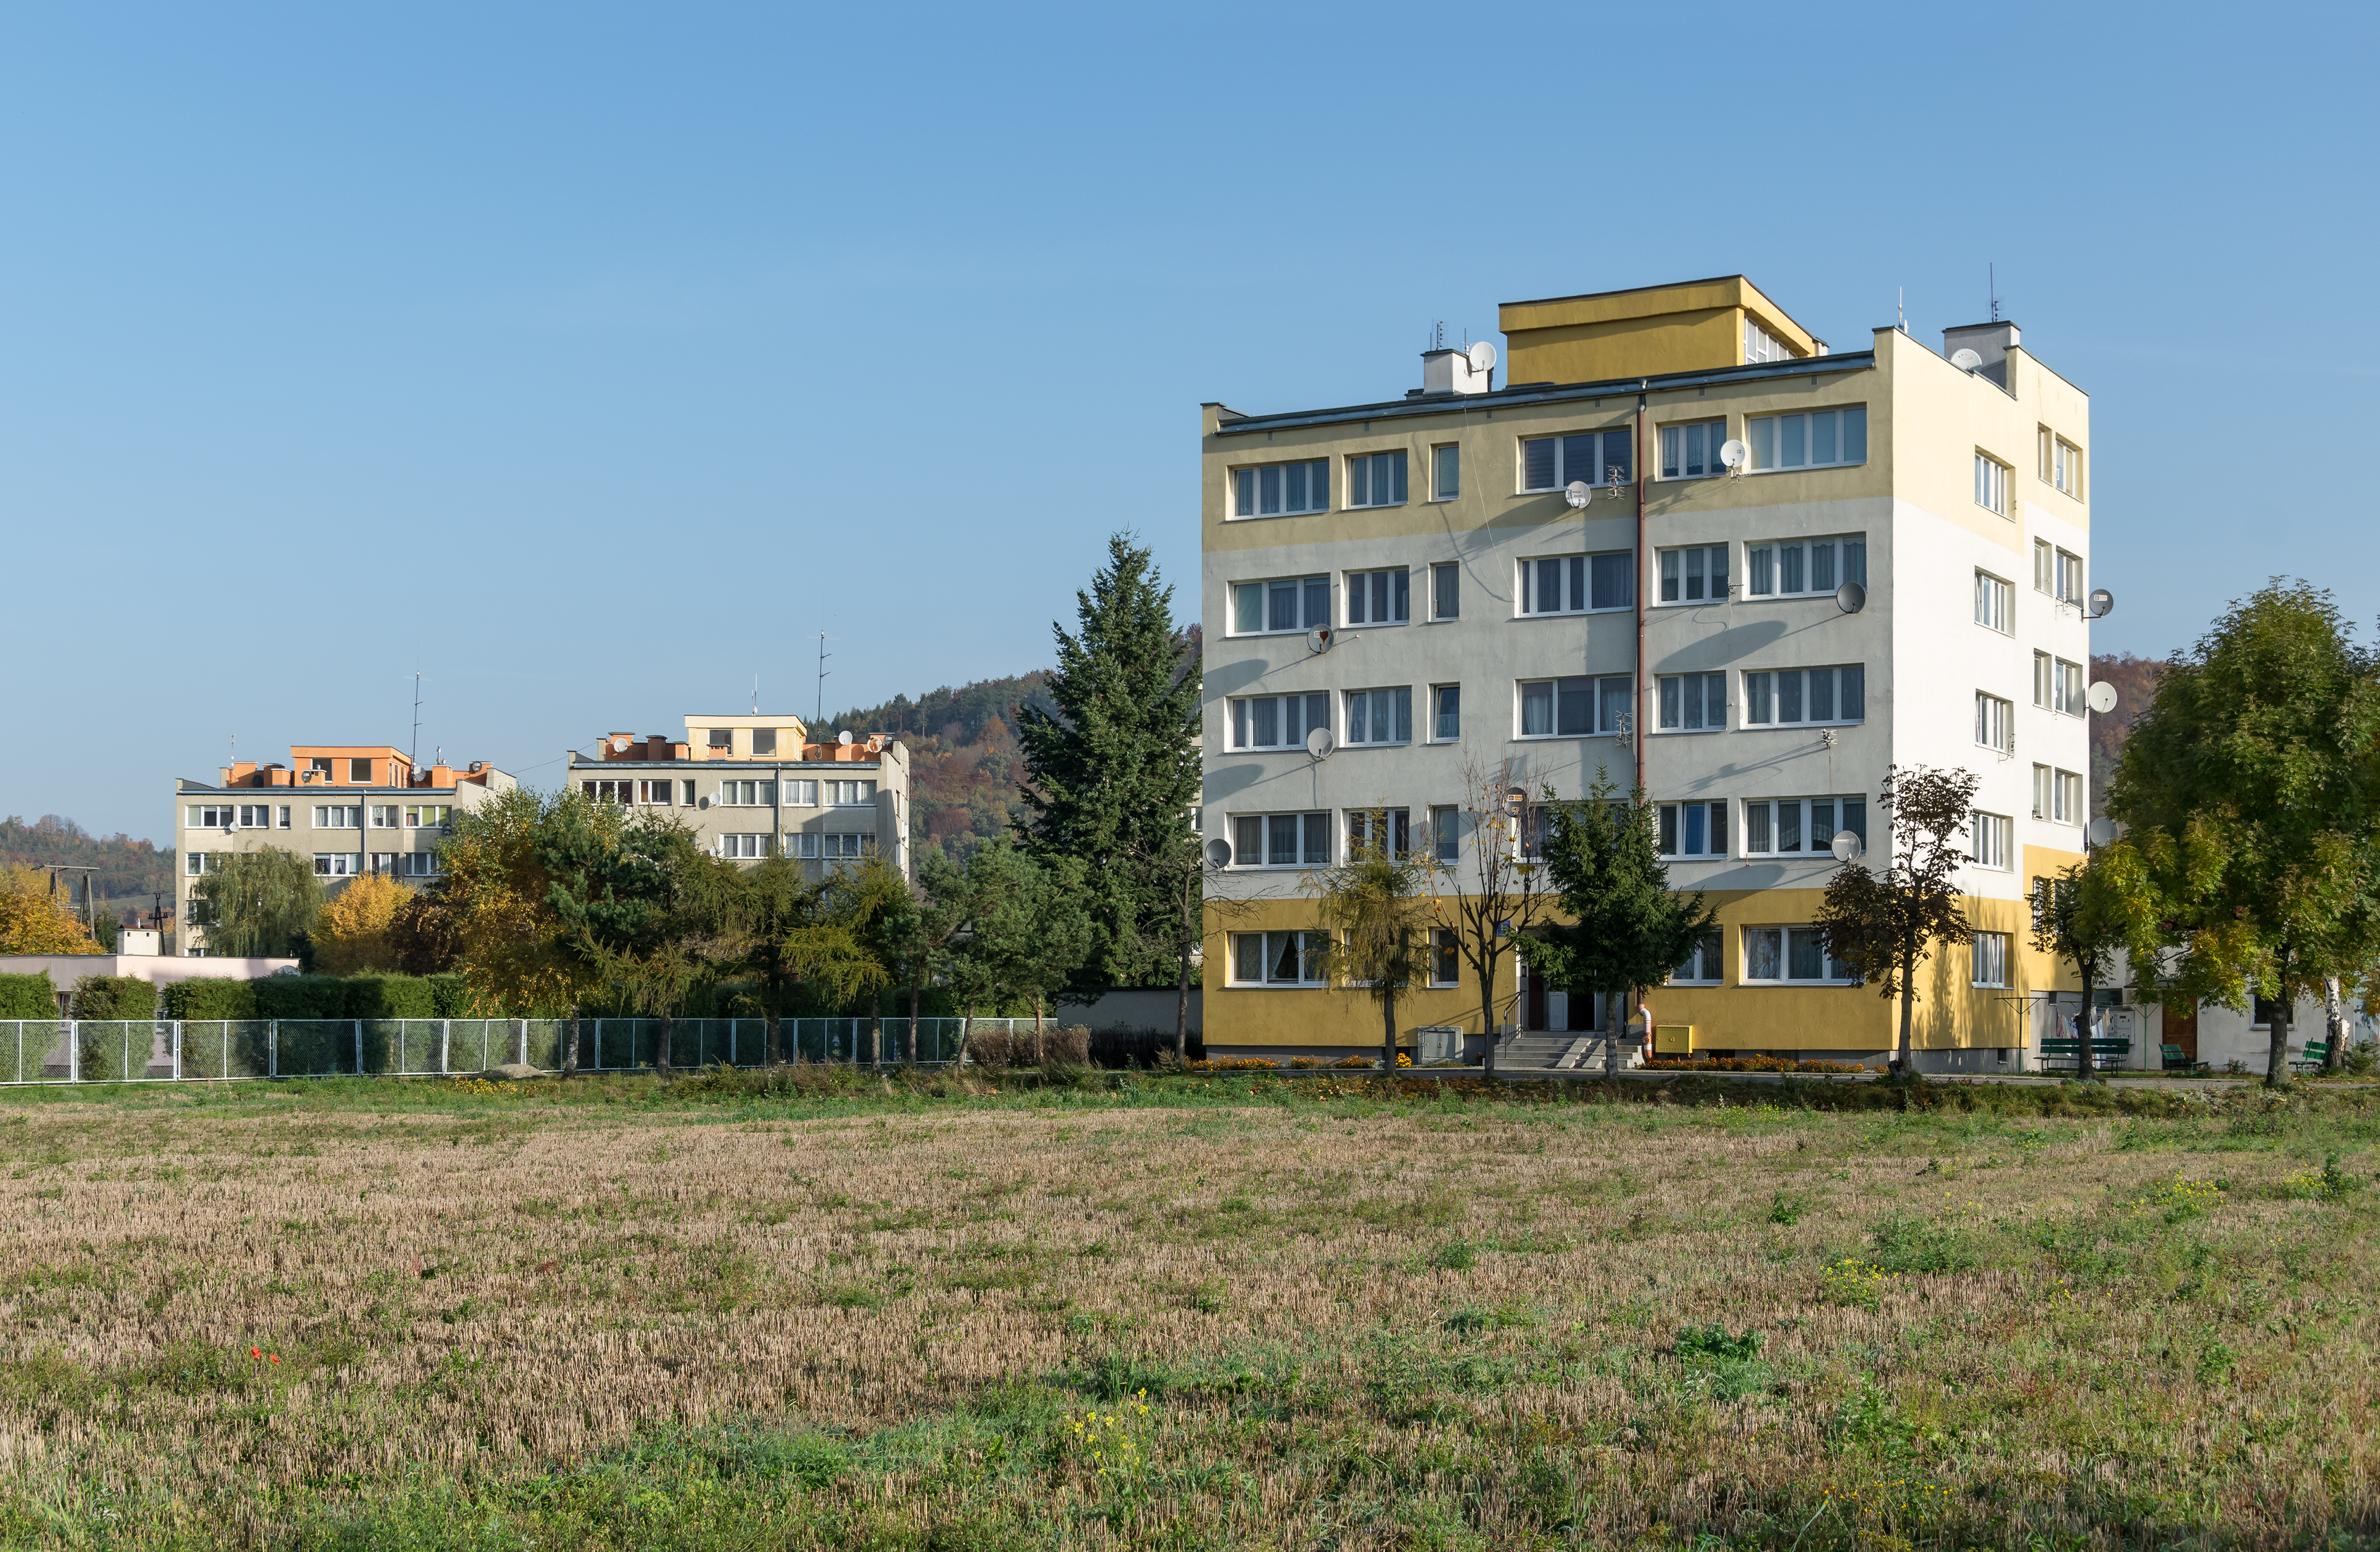 2017 Budynki mieszkalne w Ołdrzychowicach Kłodzkich